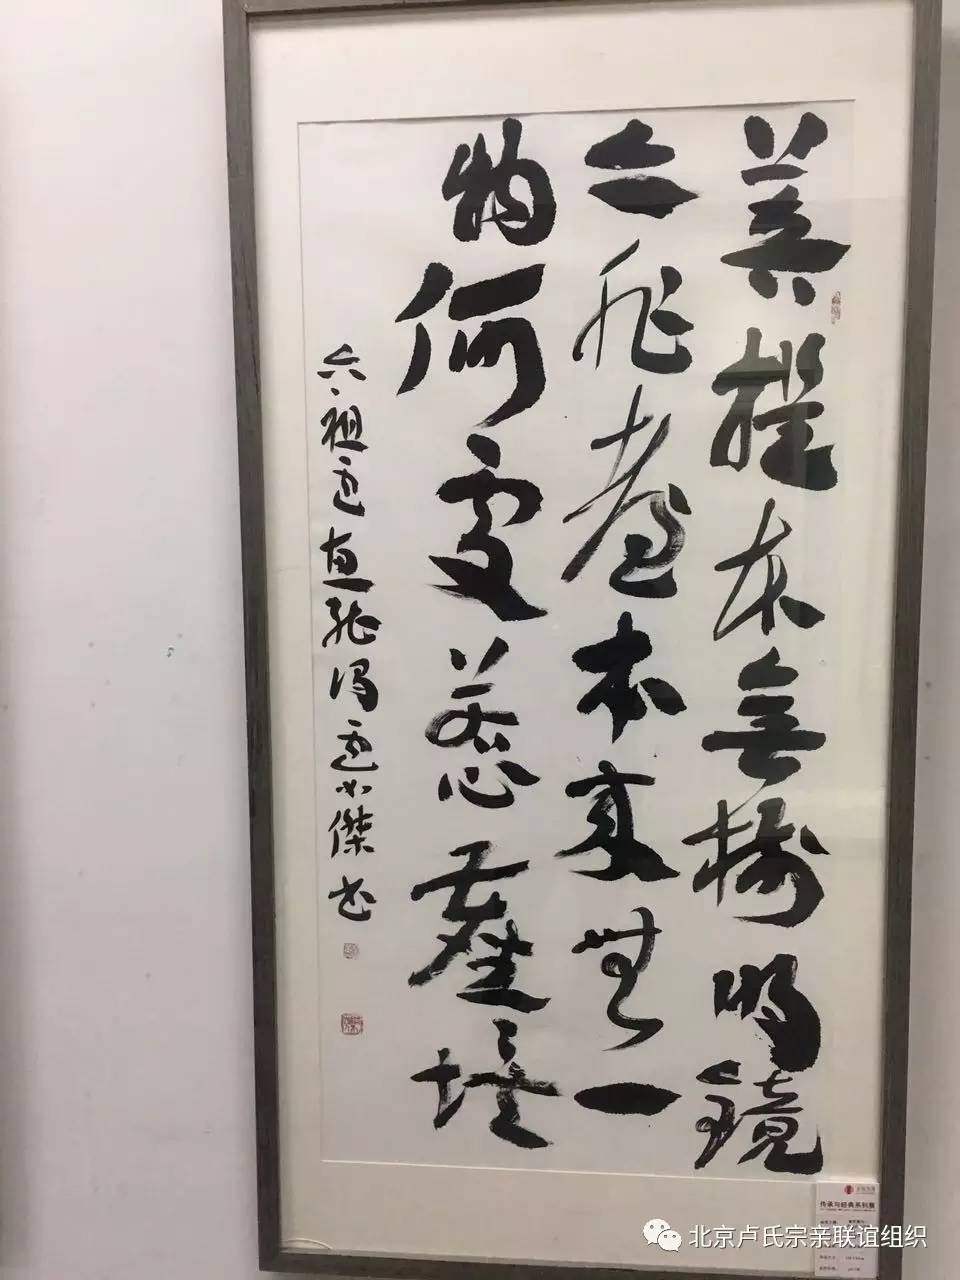 章草雄风一卢如杰书法展在中国国家画院国展艺术中心隆重开幕